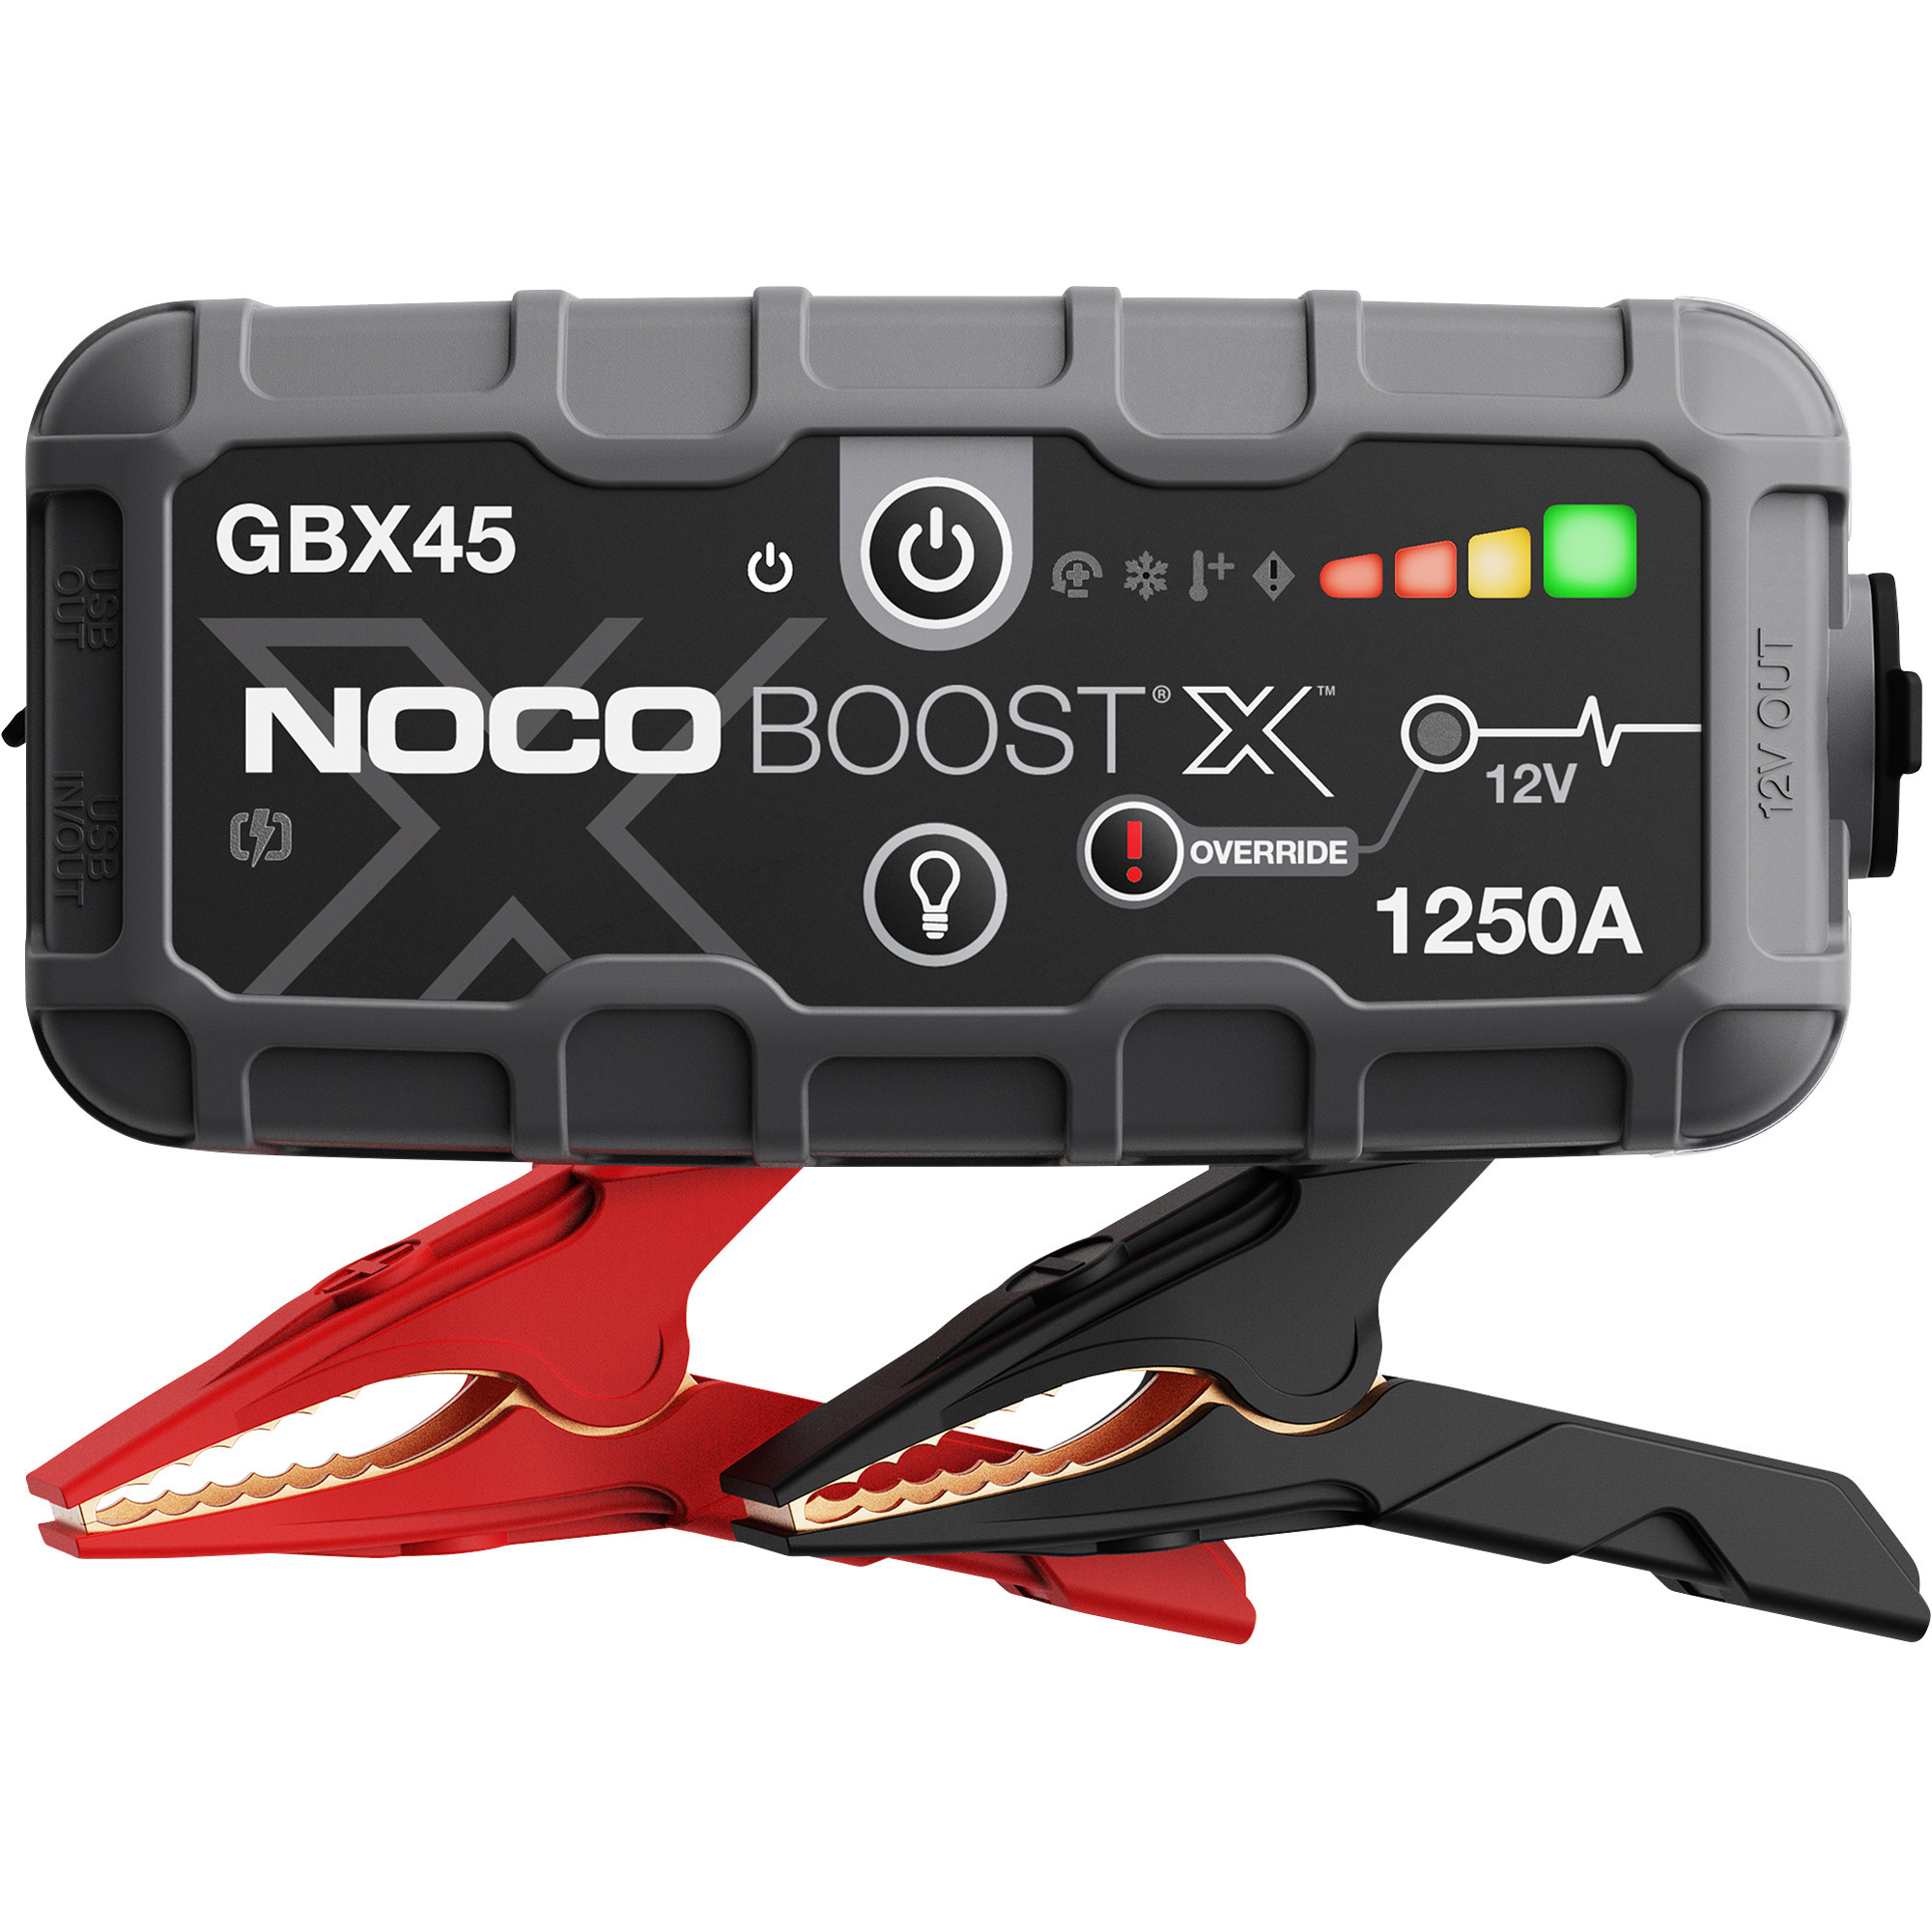 Noco Boost X 12 Volt Lithium Jump Starter â 1250 Amps, Model GBX45